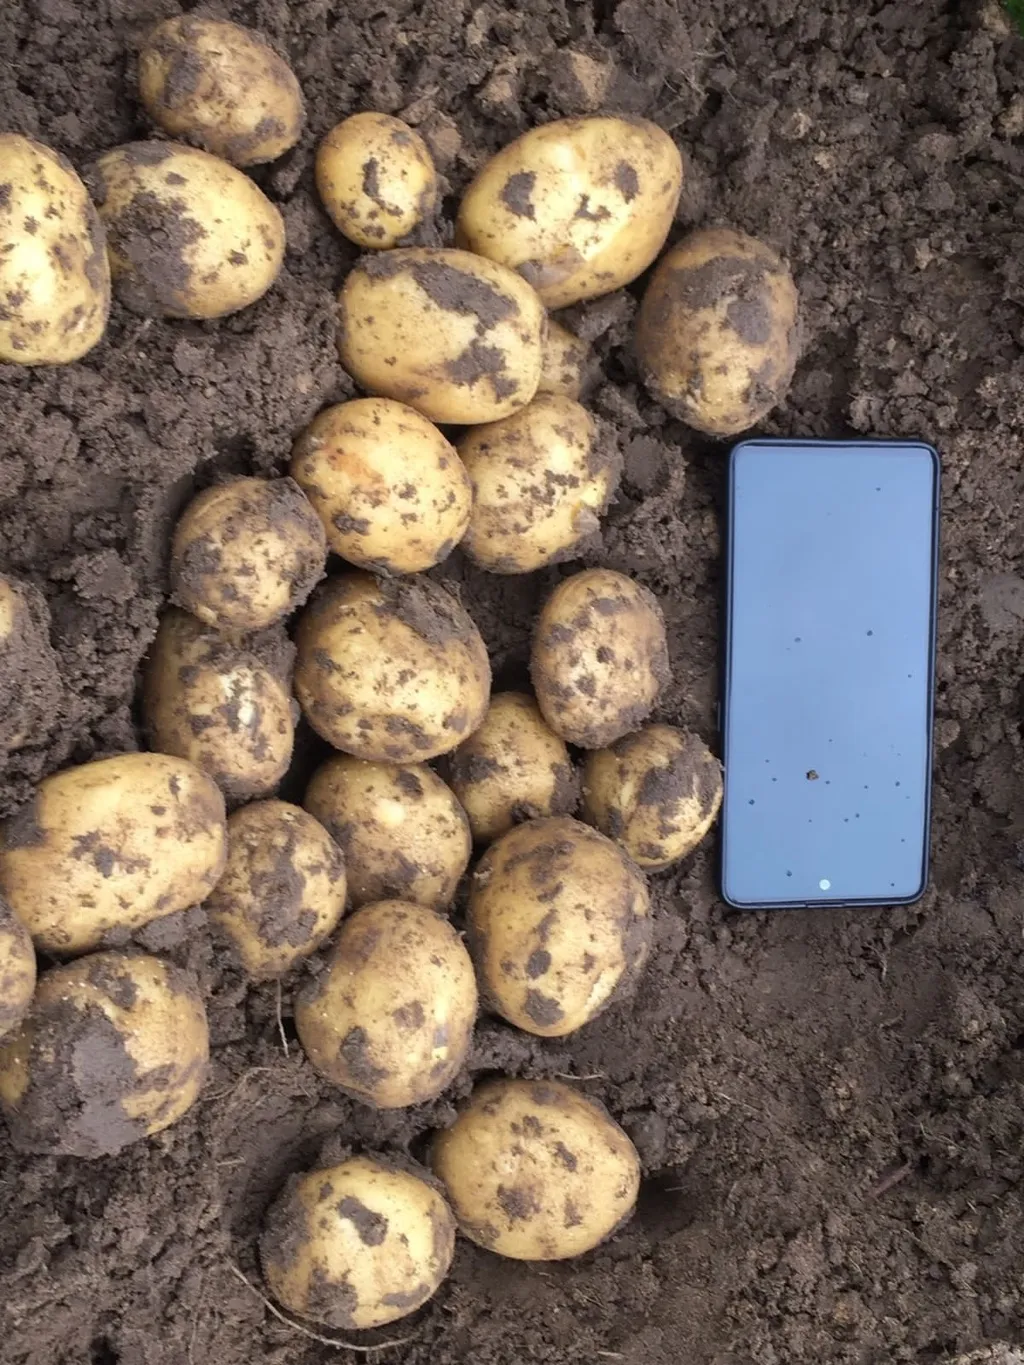 картофель молодой  урожай 2022г. в Брянске